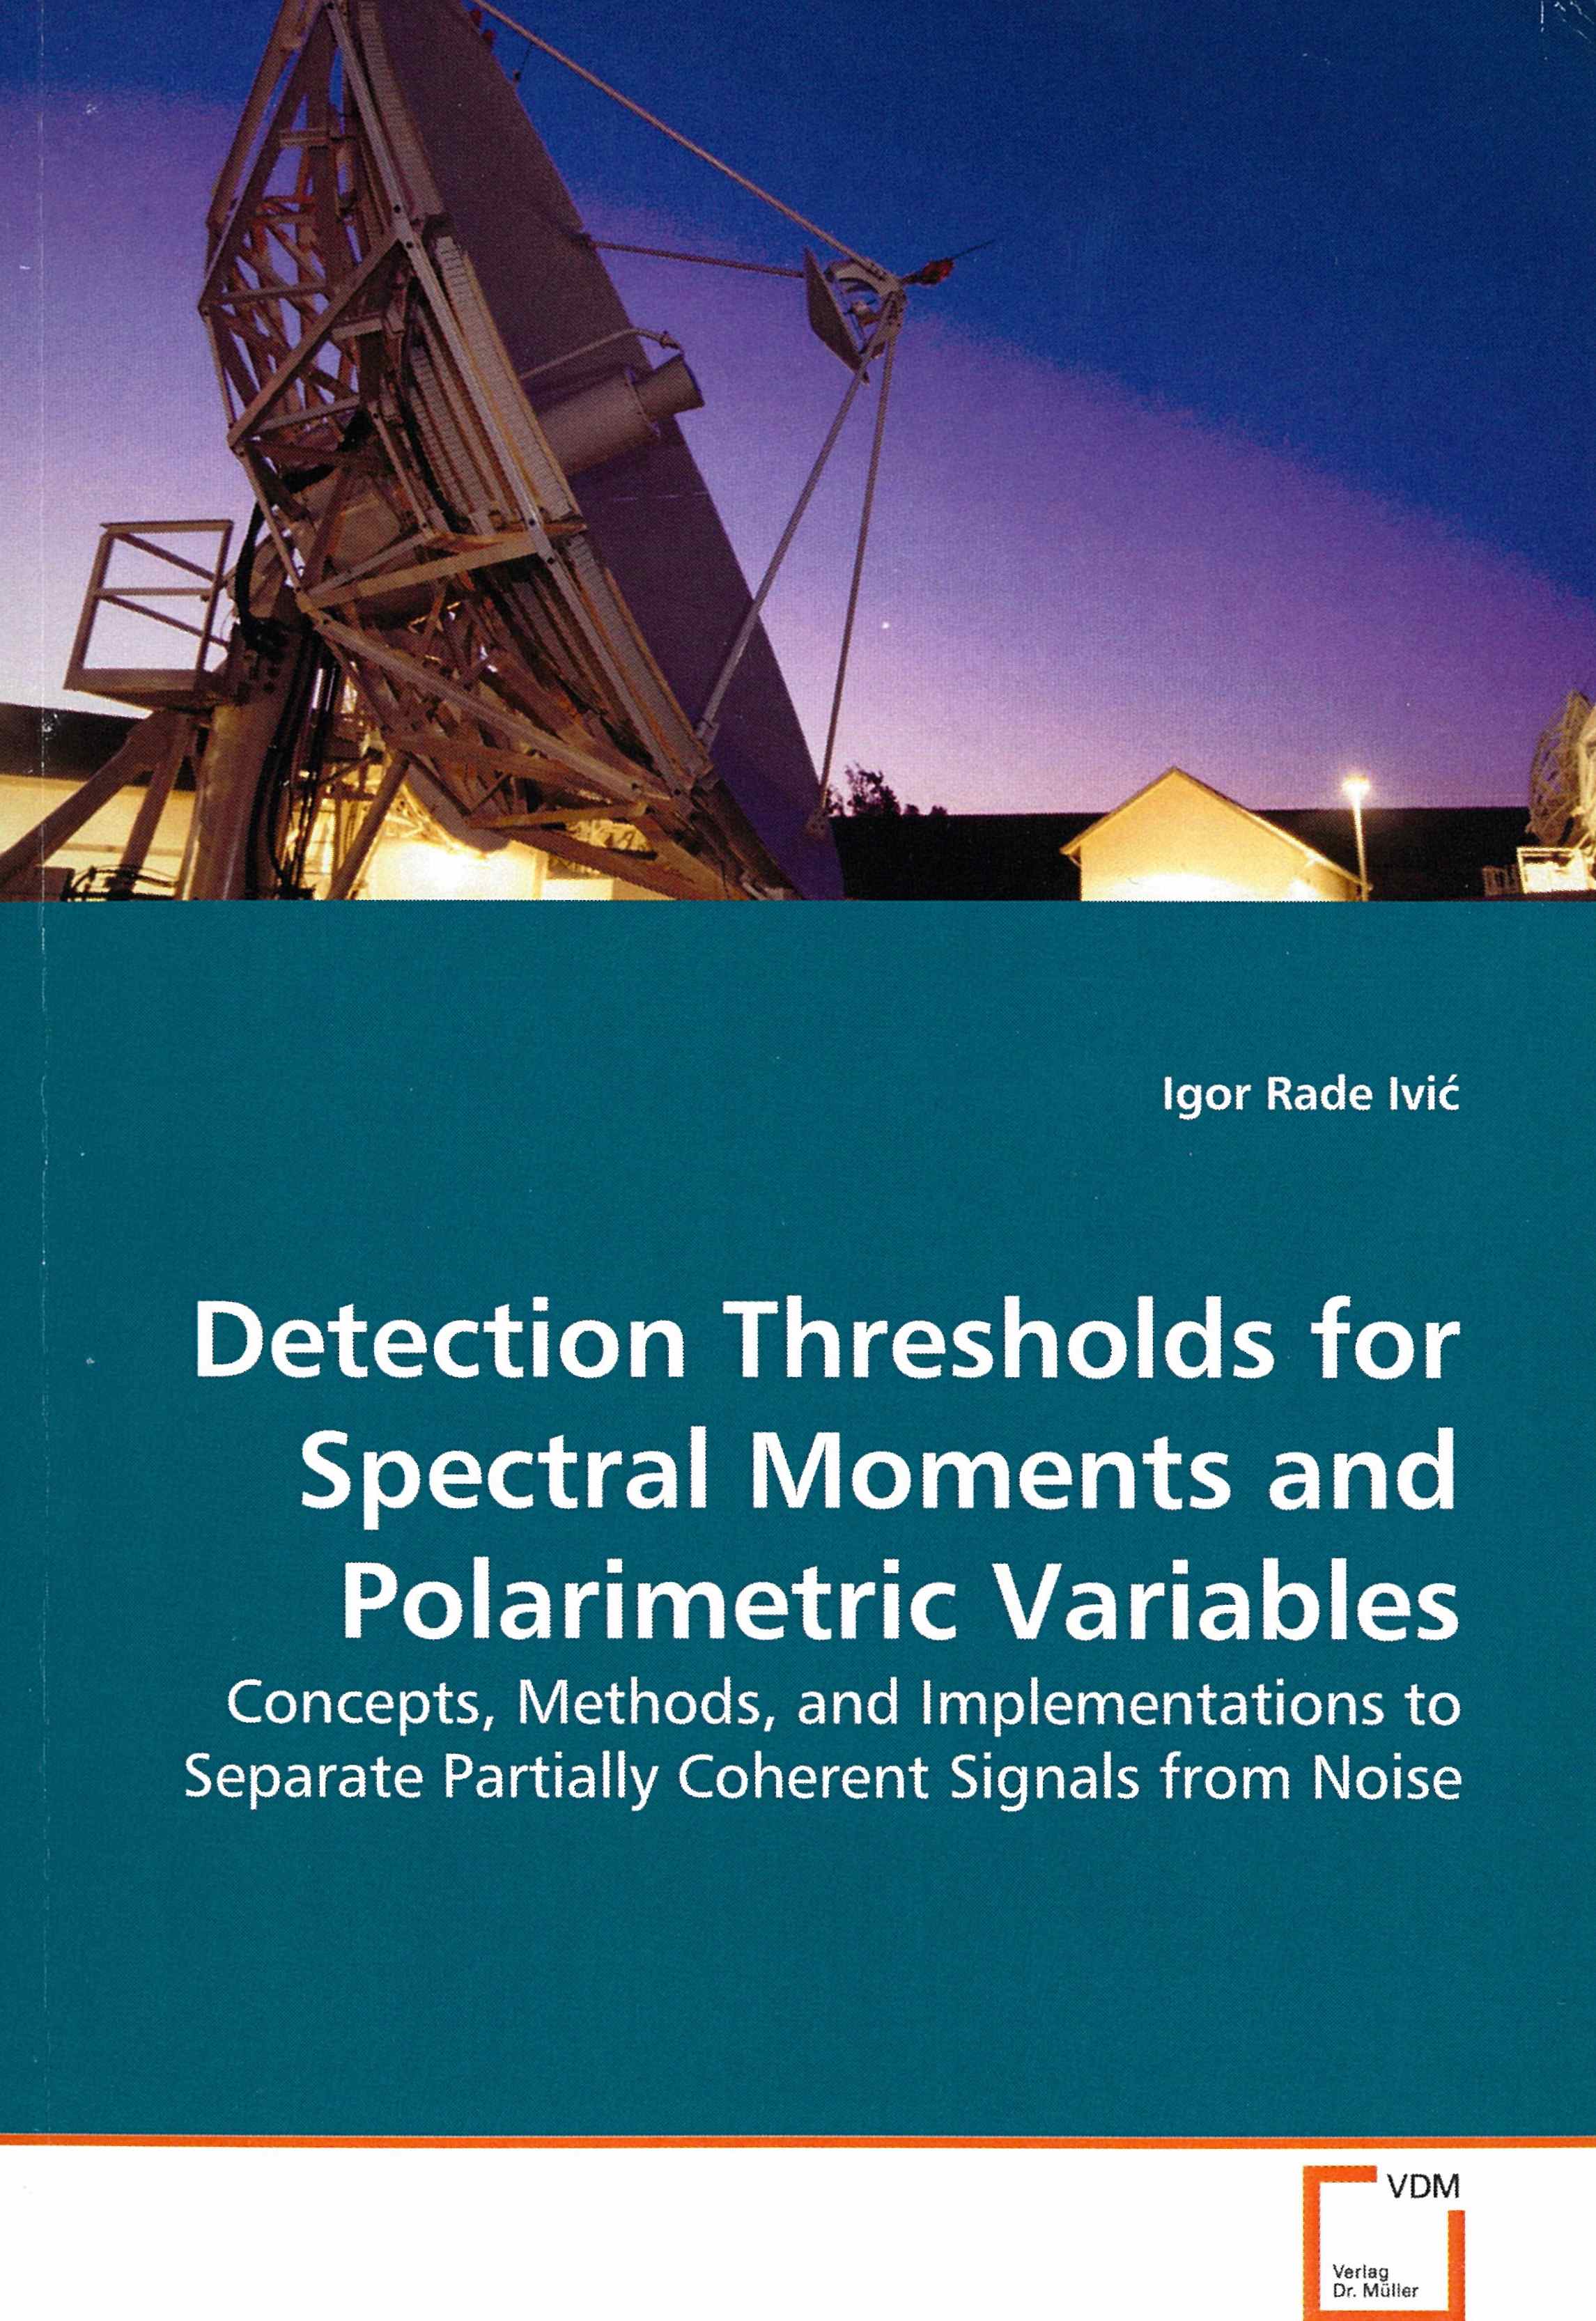 NSSL researcher publishes book on radar techniques